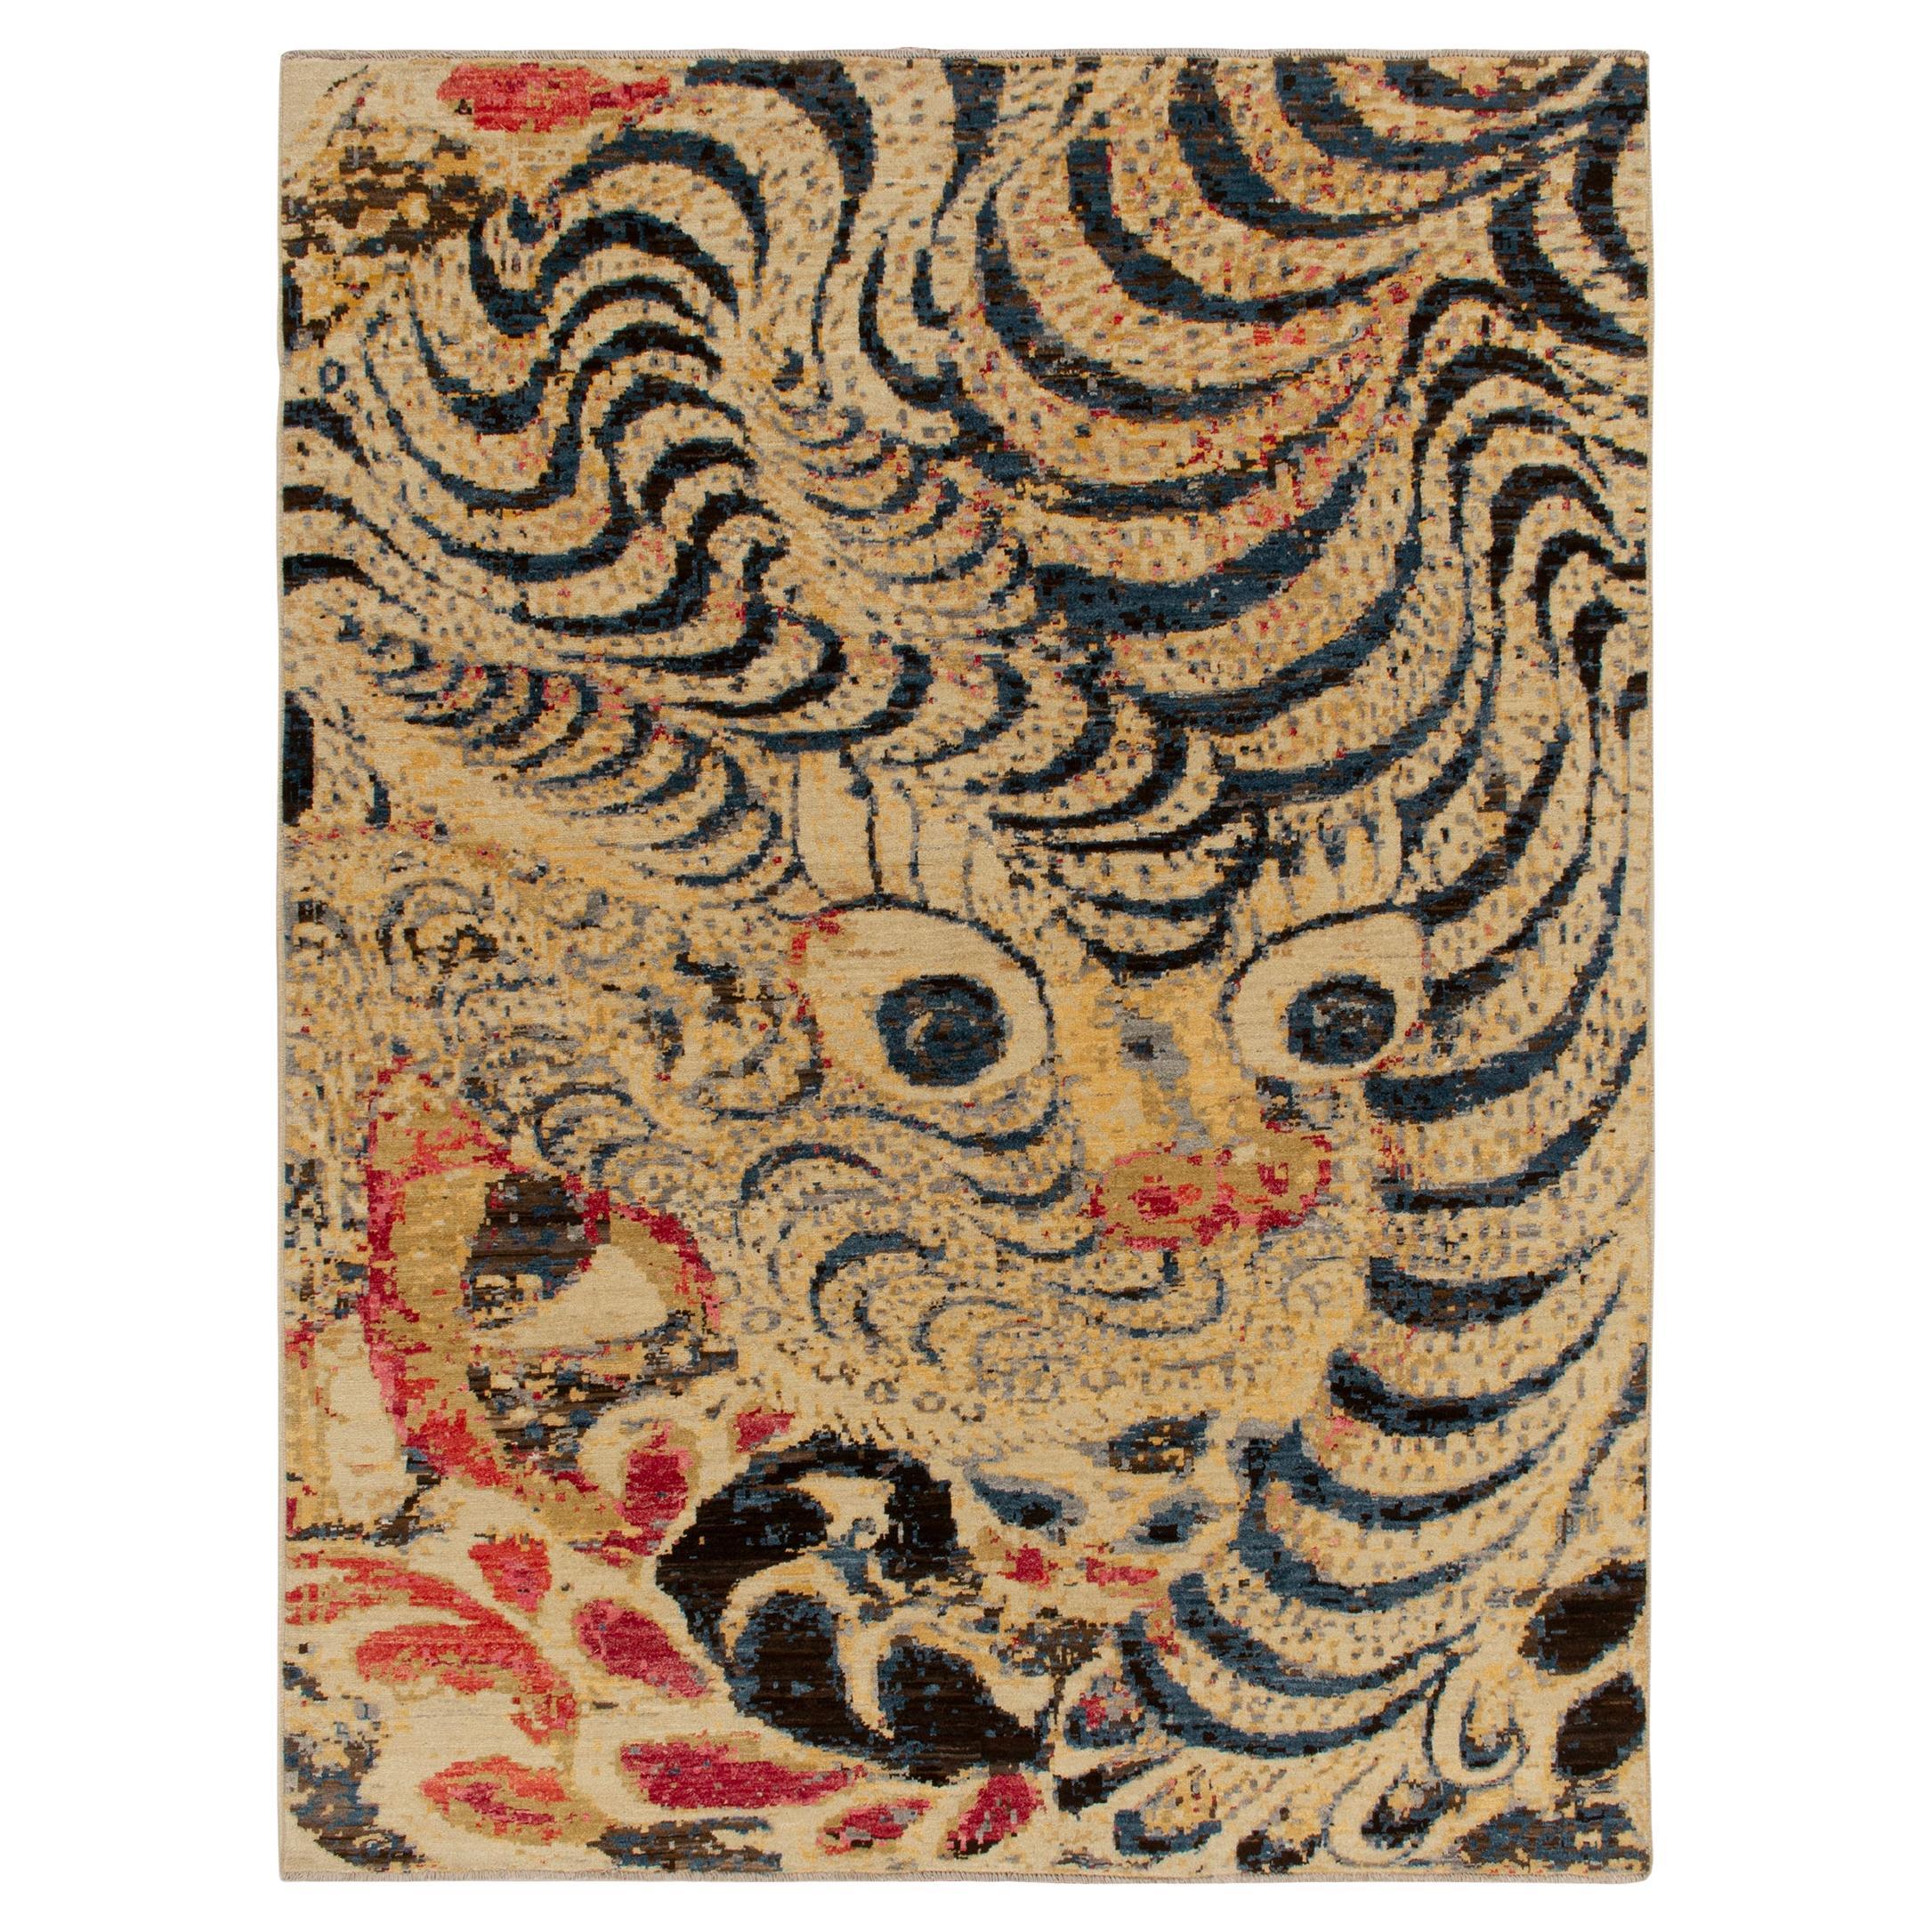 Teppich &amp;amp;amp; Kilims Bildtiger Tigerteppich in Beige-Braun mit Blau und Rot